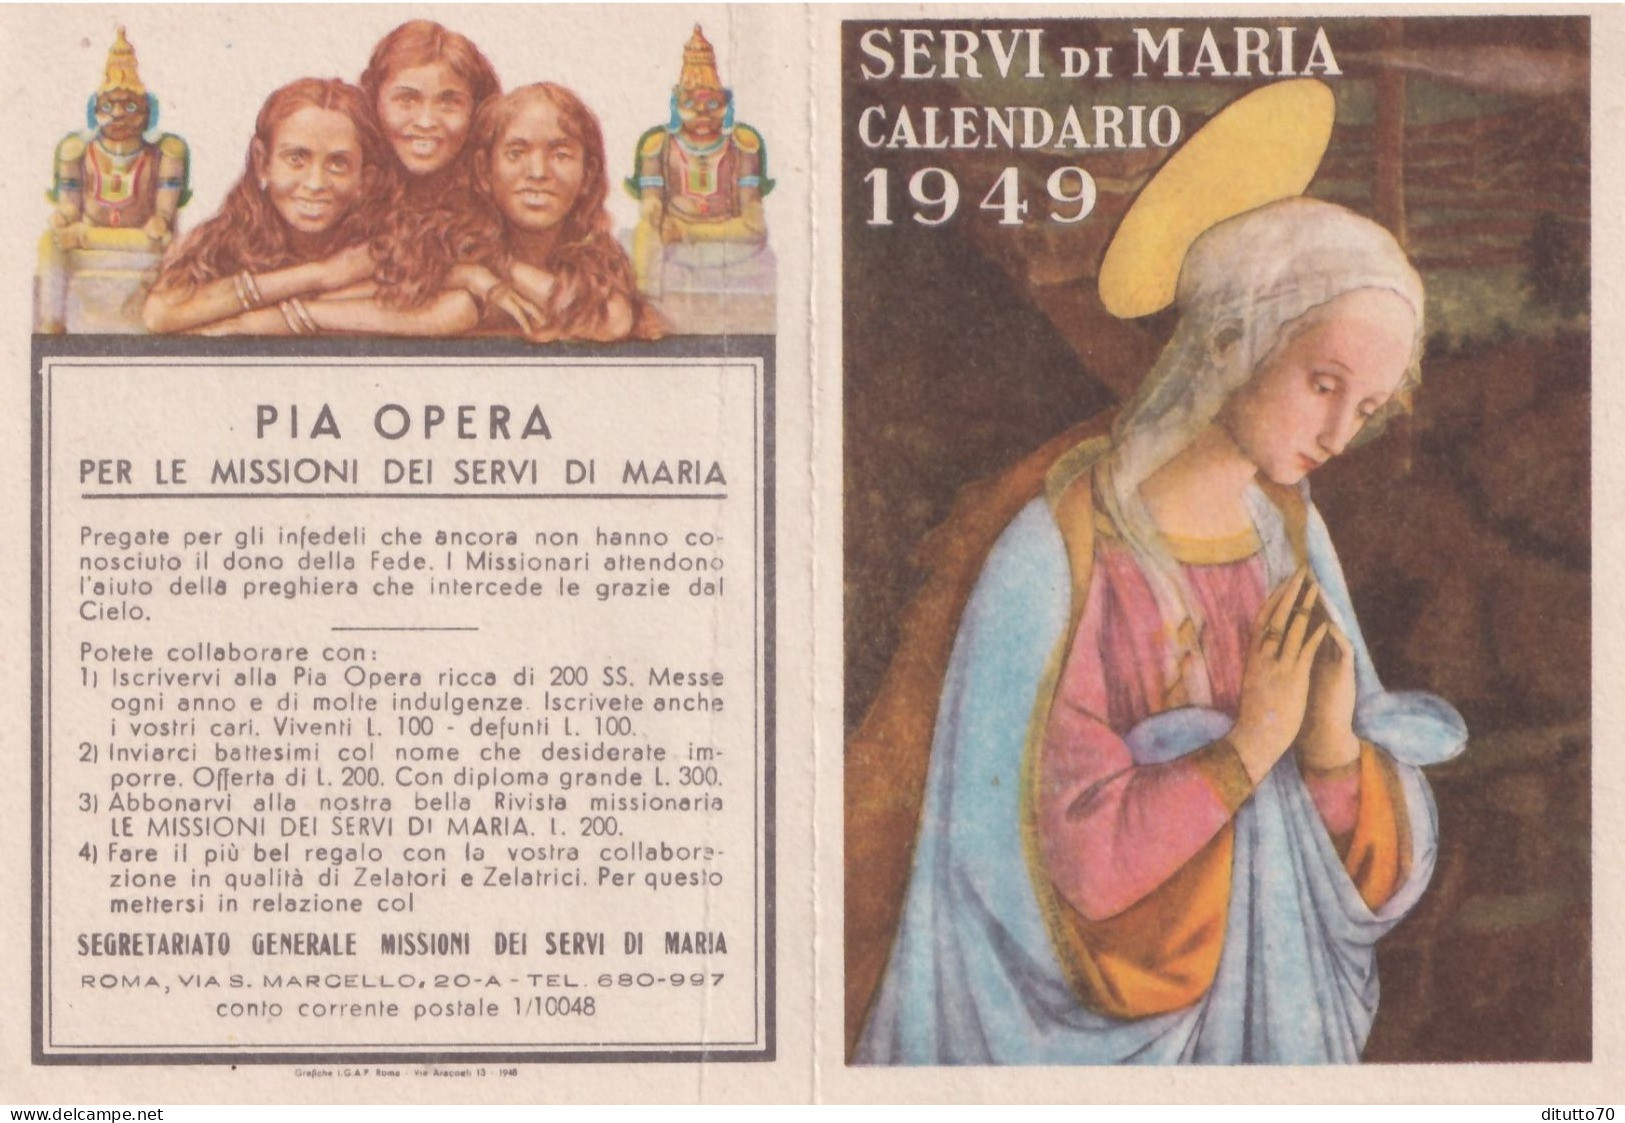 Calendarietto - Pia Opera Per Missioni Dei Servi Di Maria - Roma - Anno 1949 - Formato Piccolo : 1941-60